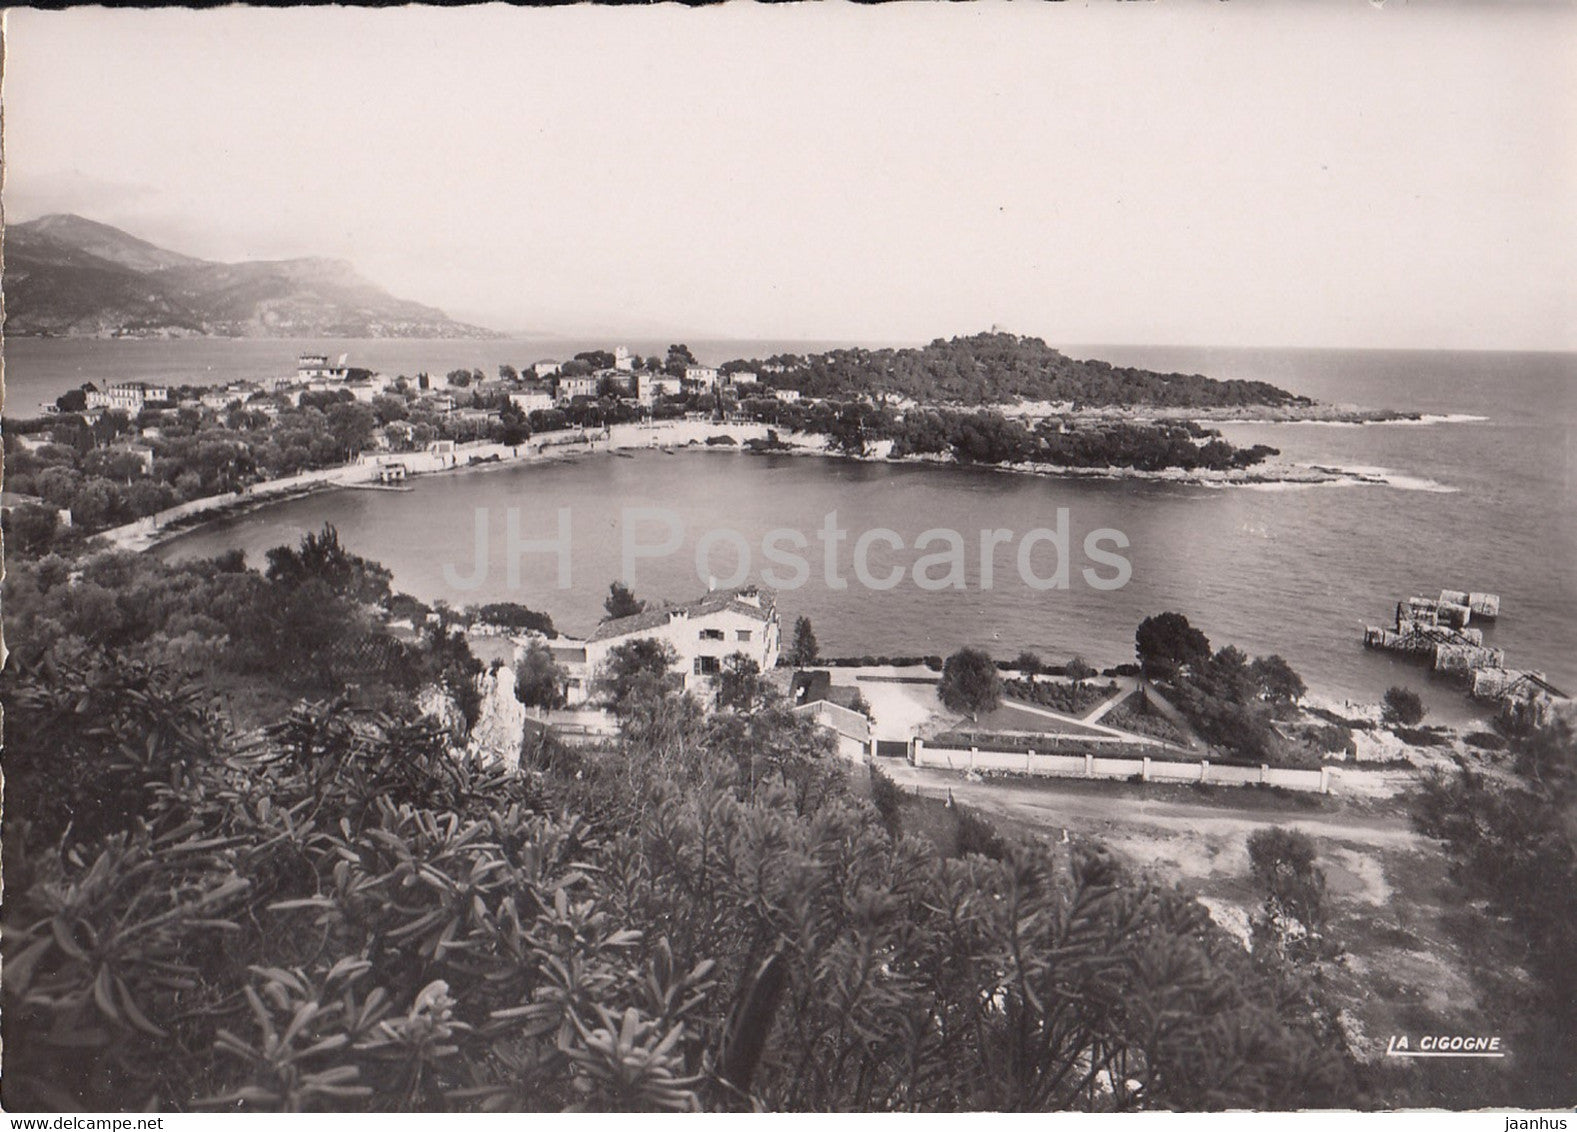 Saint Jean Cap Ferrat - L'Anse des Fosses et les caps - Monaco - unused - JH Postcards